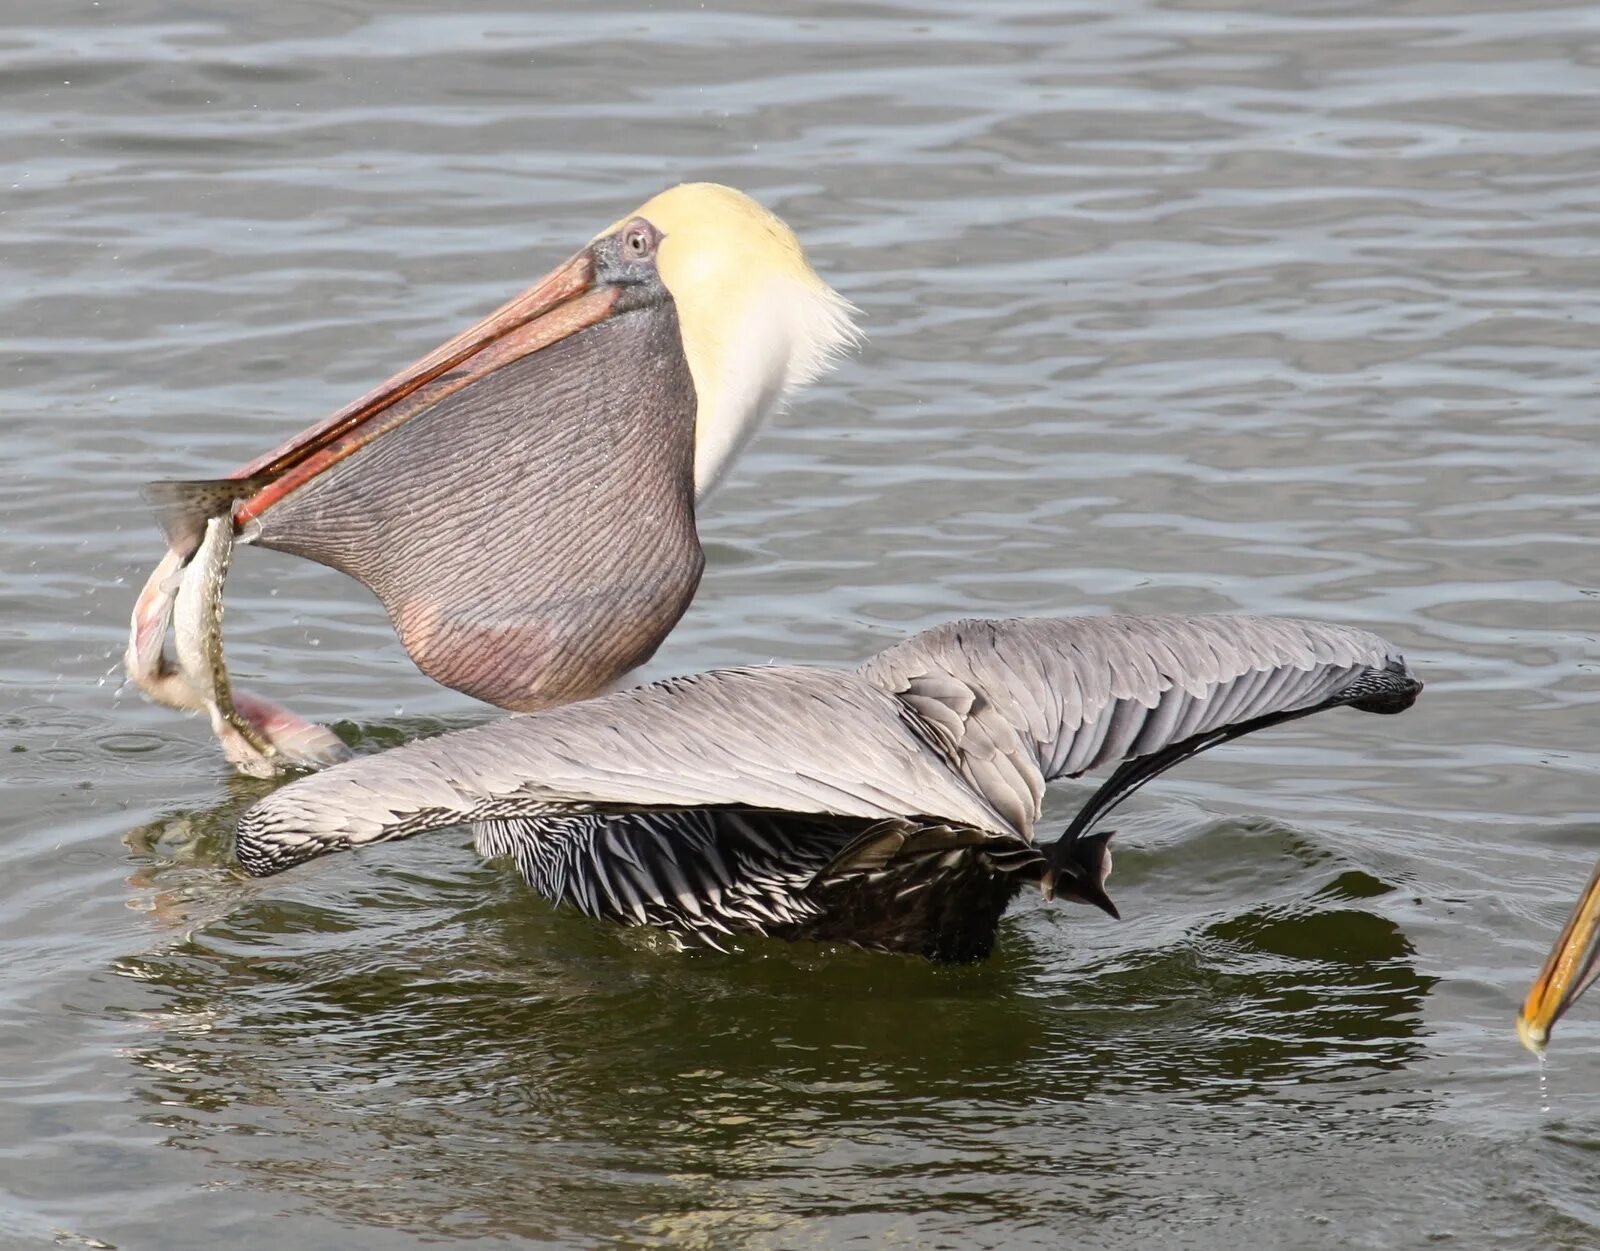 Пеликан мешконос птица. Большерот рыба-Пеликан. Клюв пеликана. Пеликан питается рыбой.